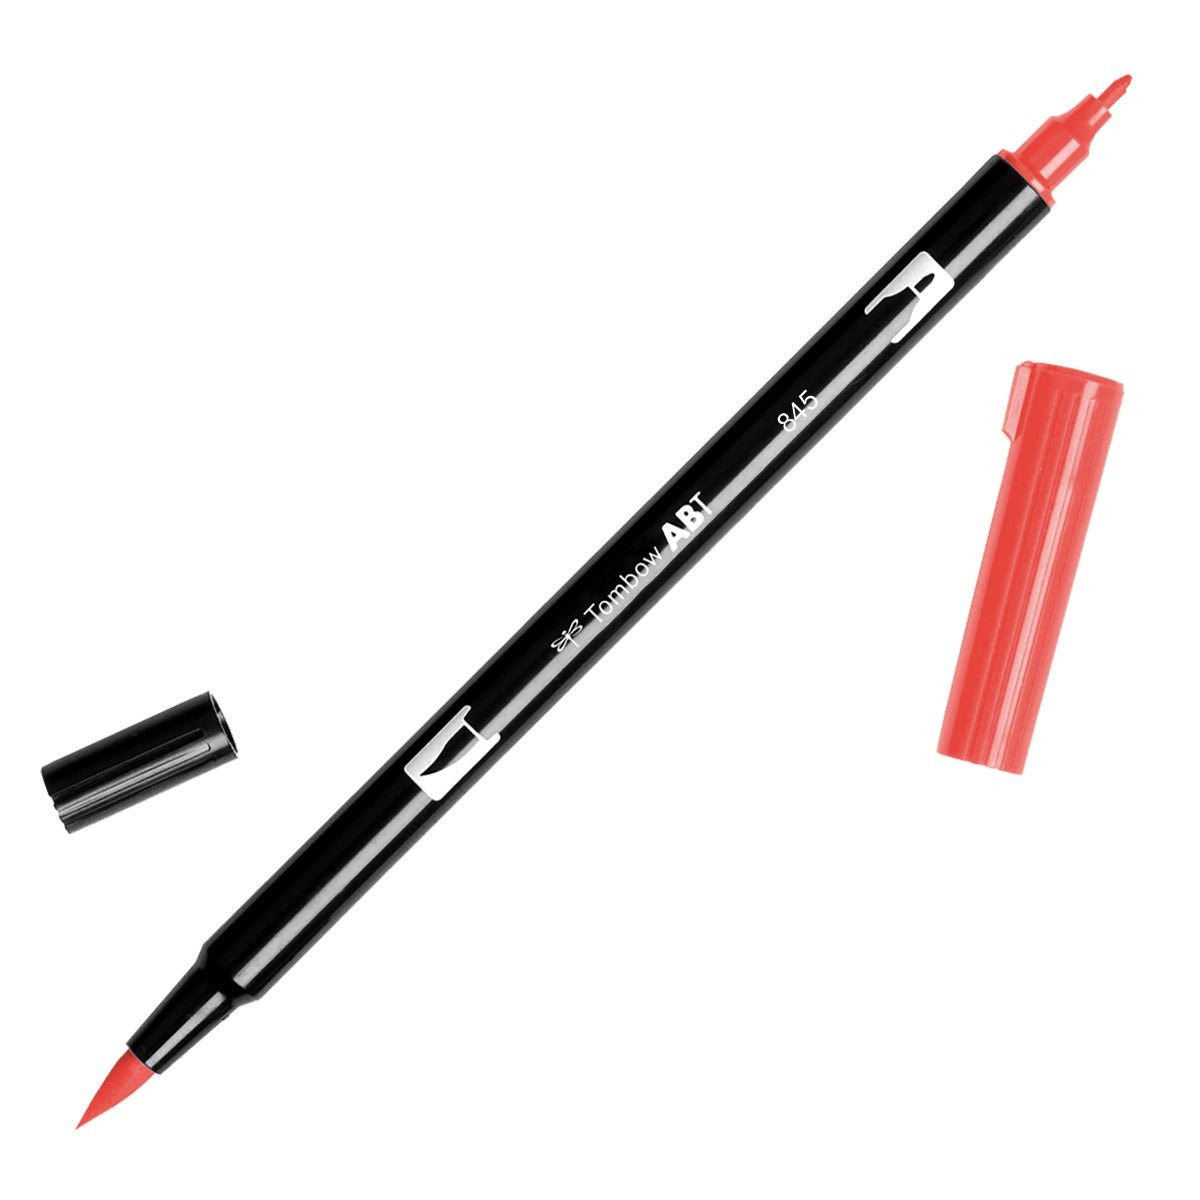 Tombow Dual Brush Pen 845 Carmine - theartshop.com.au